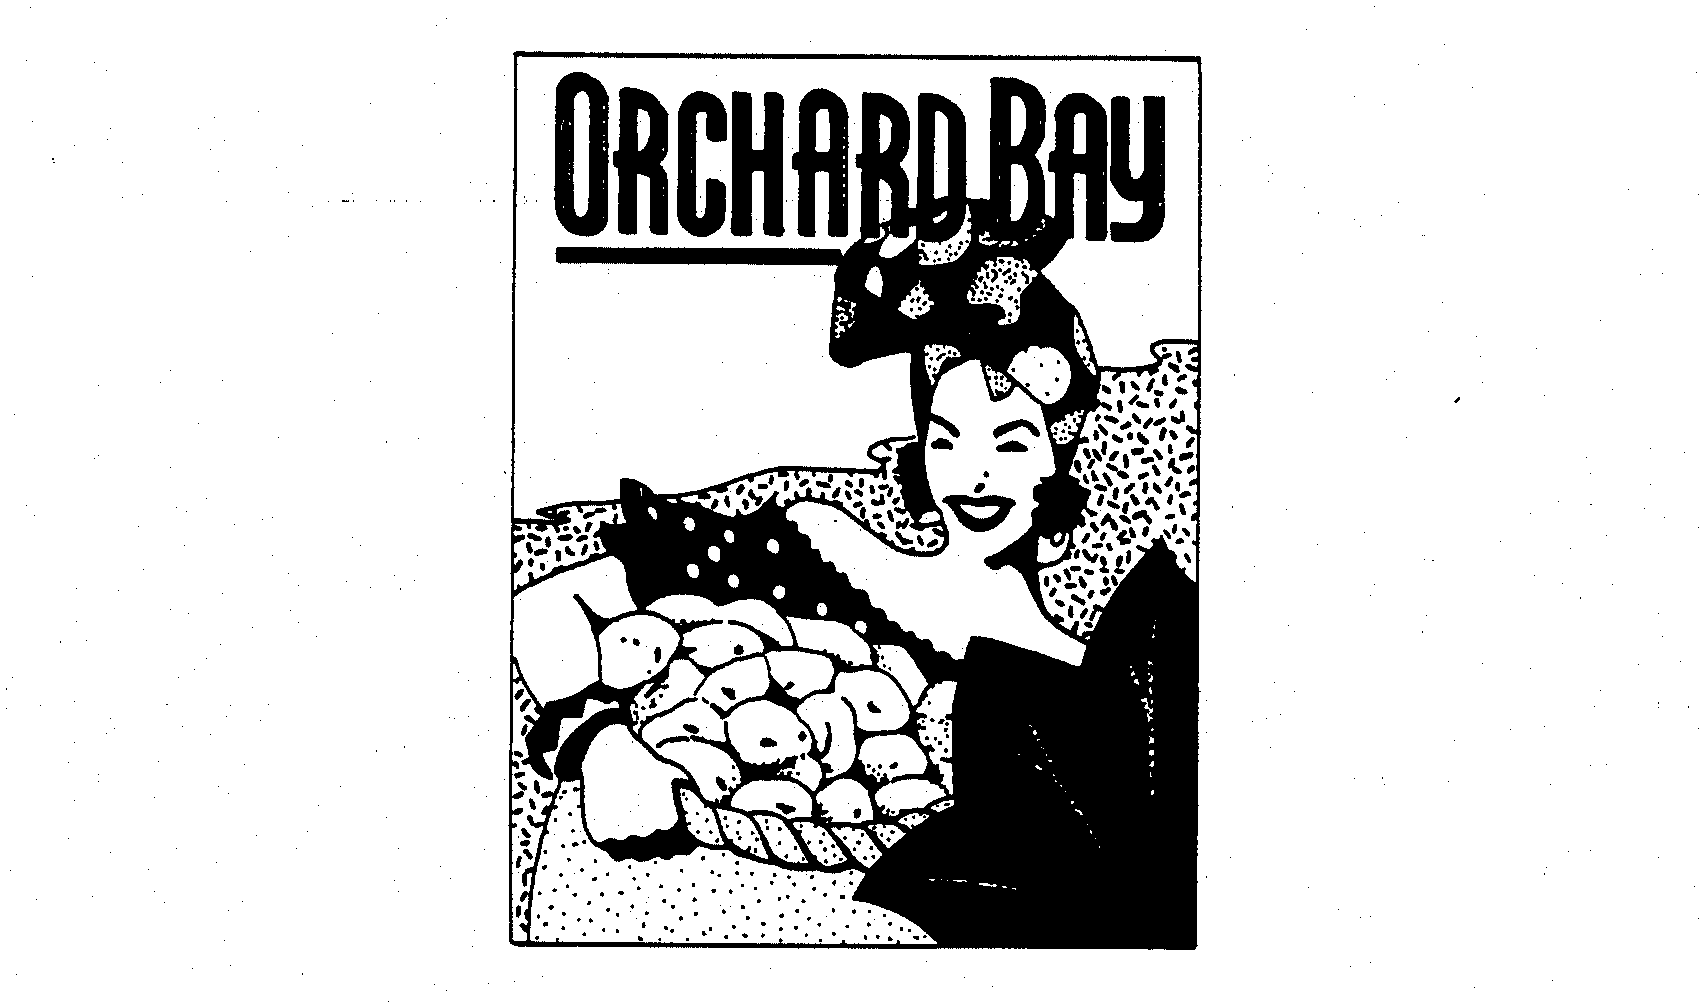  ORCHARD BAY